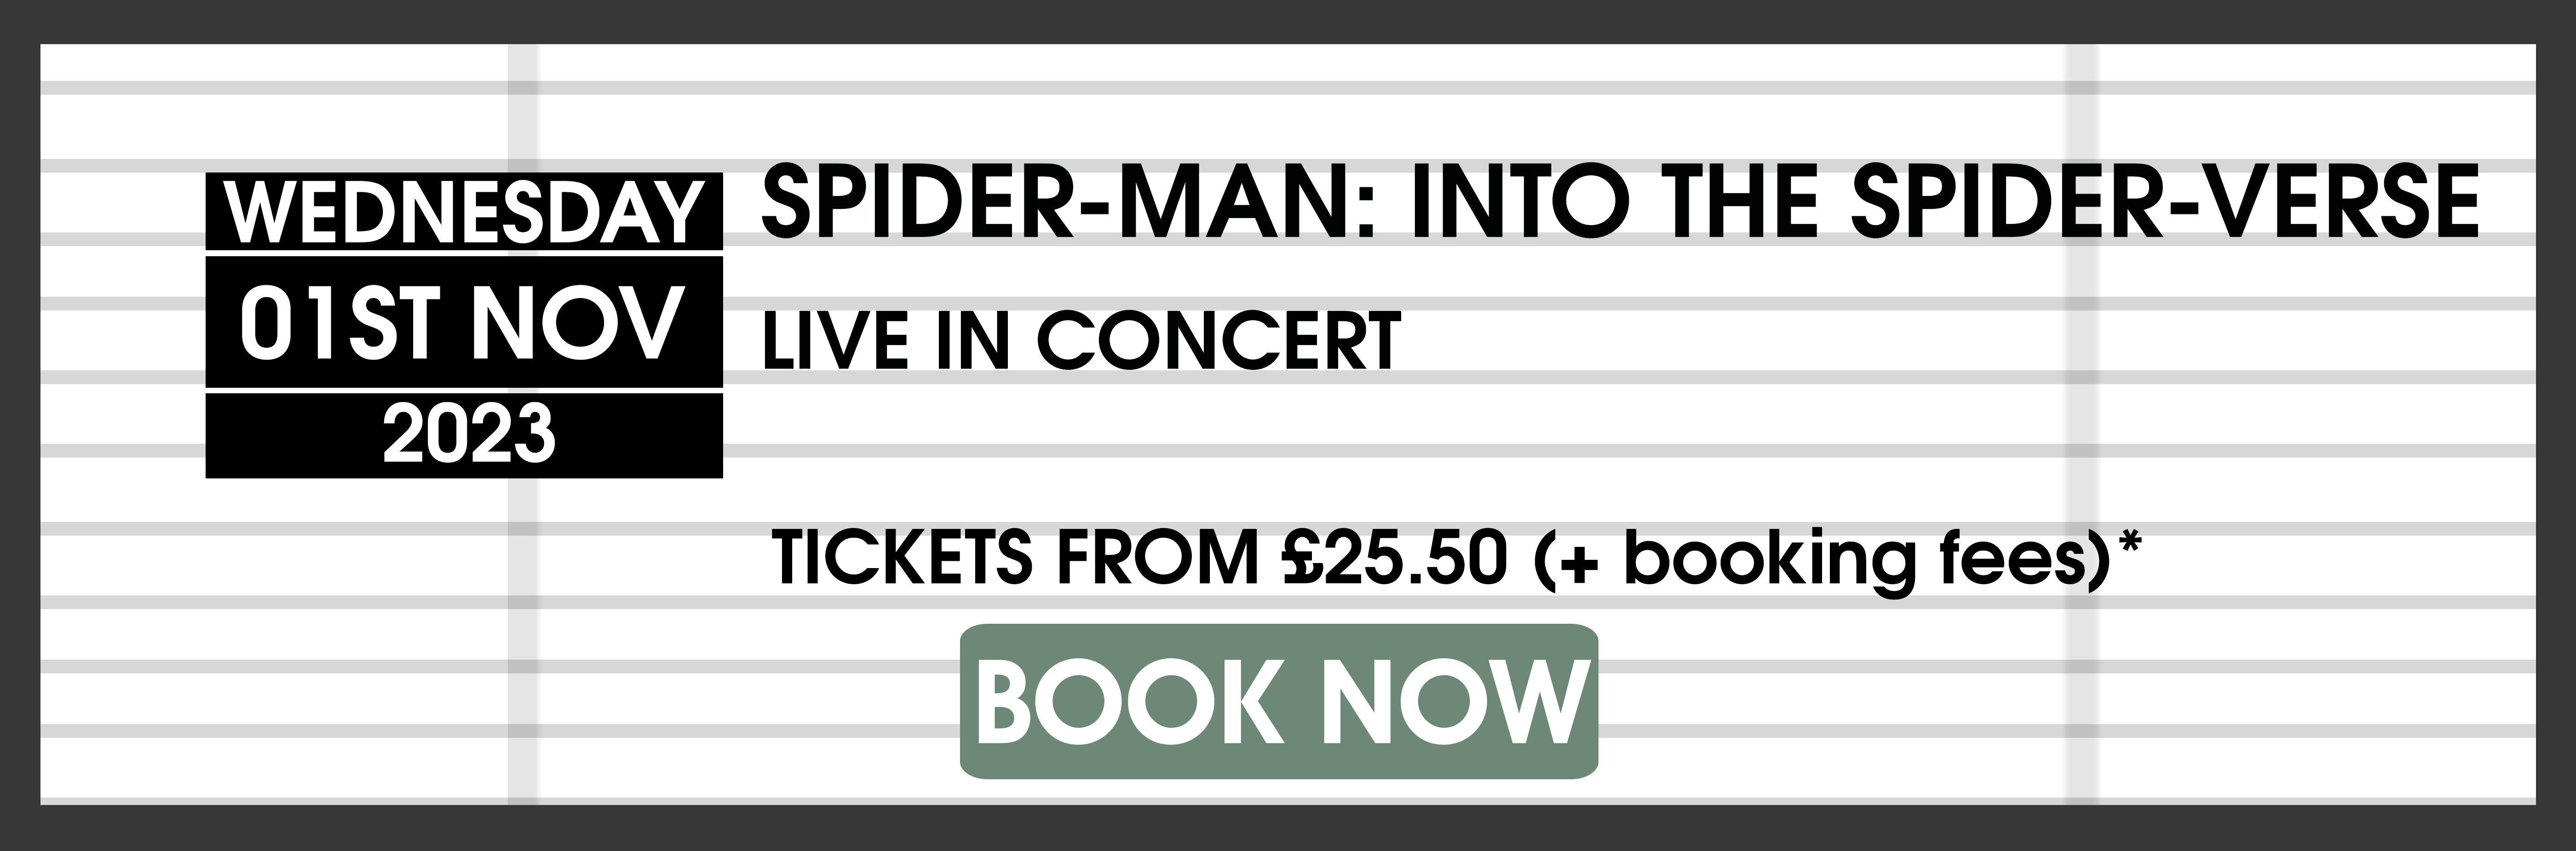 01.11.23 Spiderman Live in Con